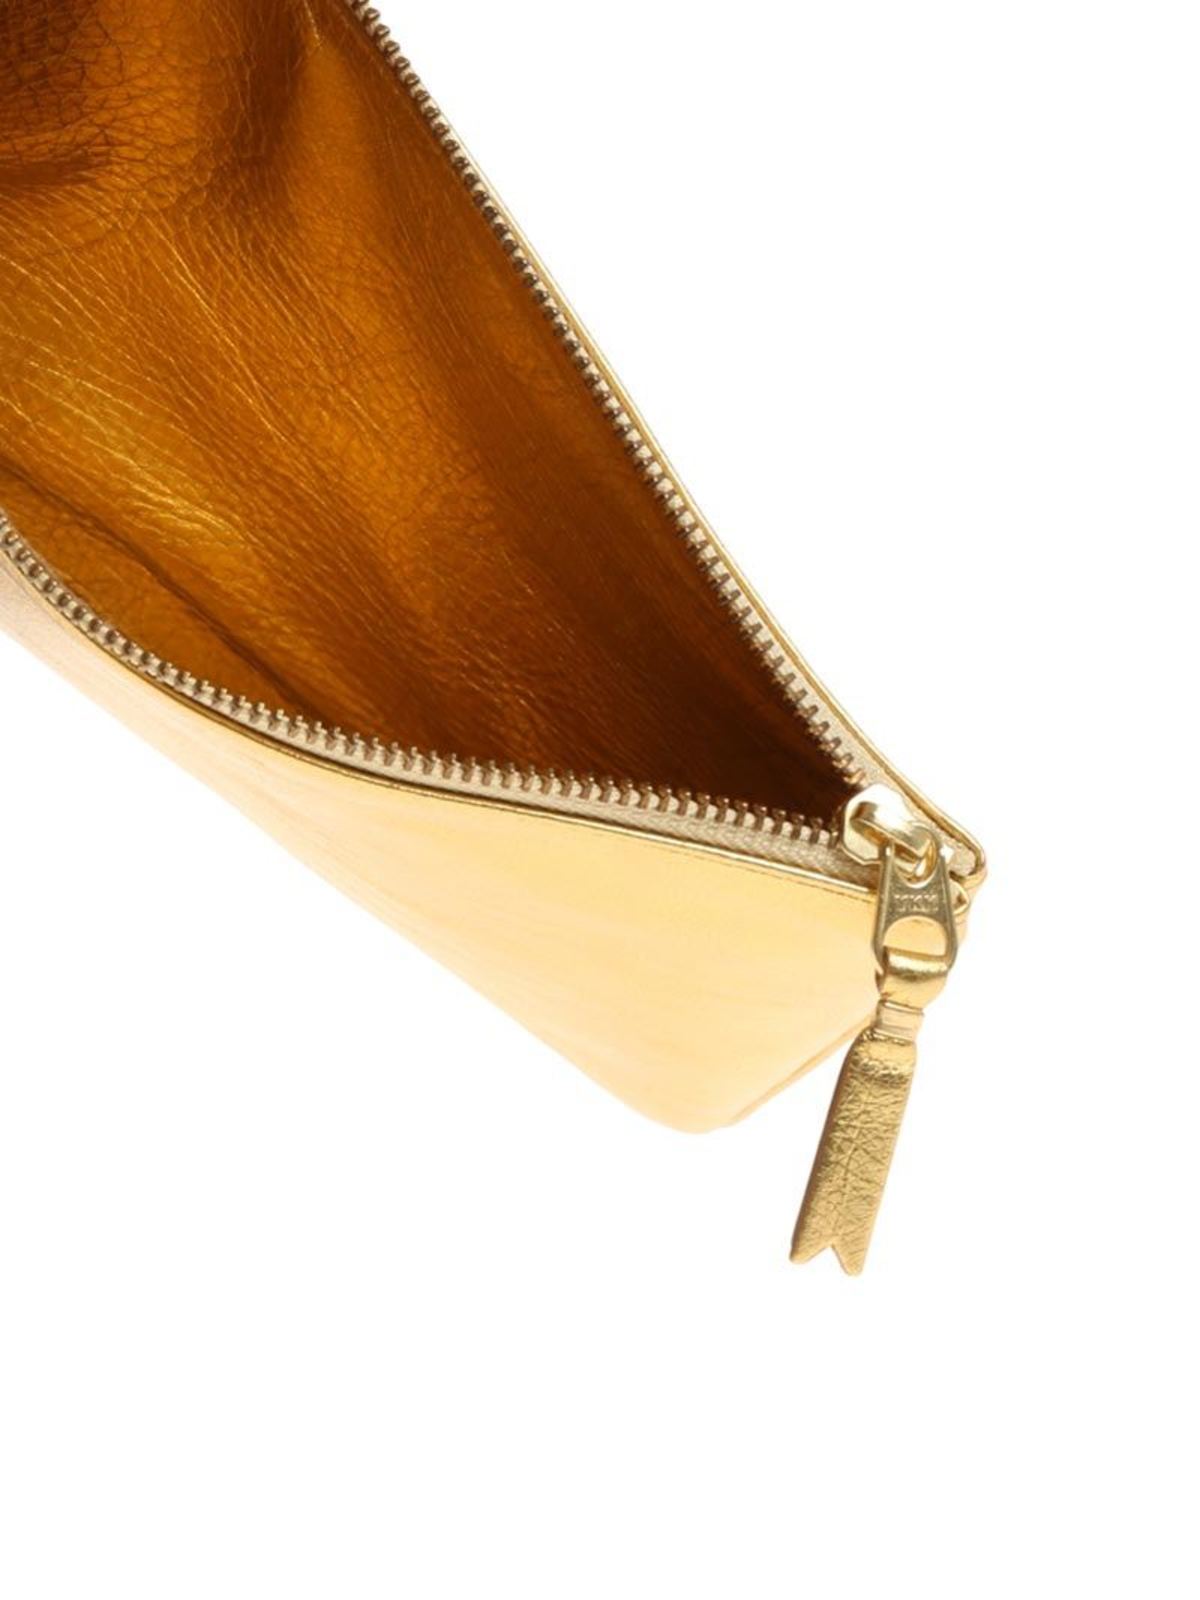 pijn Paradox Portiek Clutches Comme Des Garçons Wallet - Golden leather purse - SA5100GGOLD